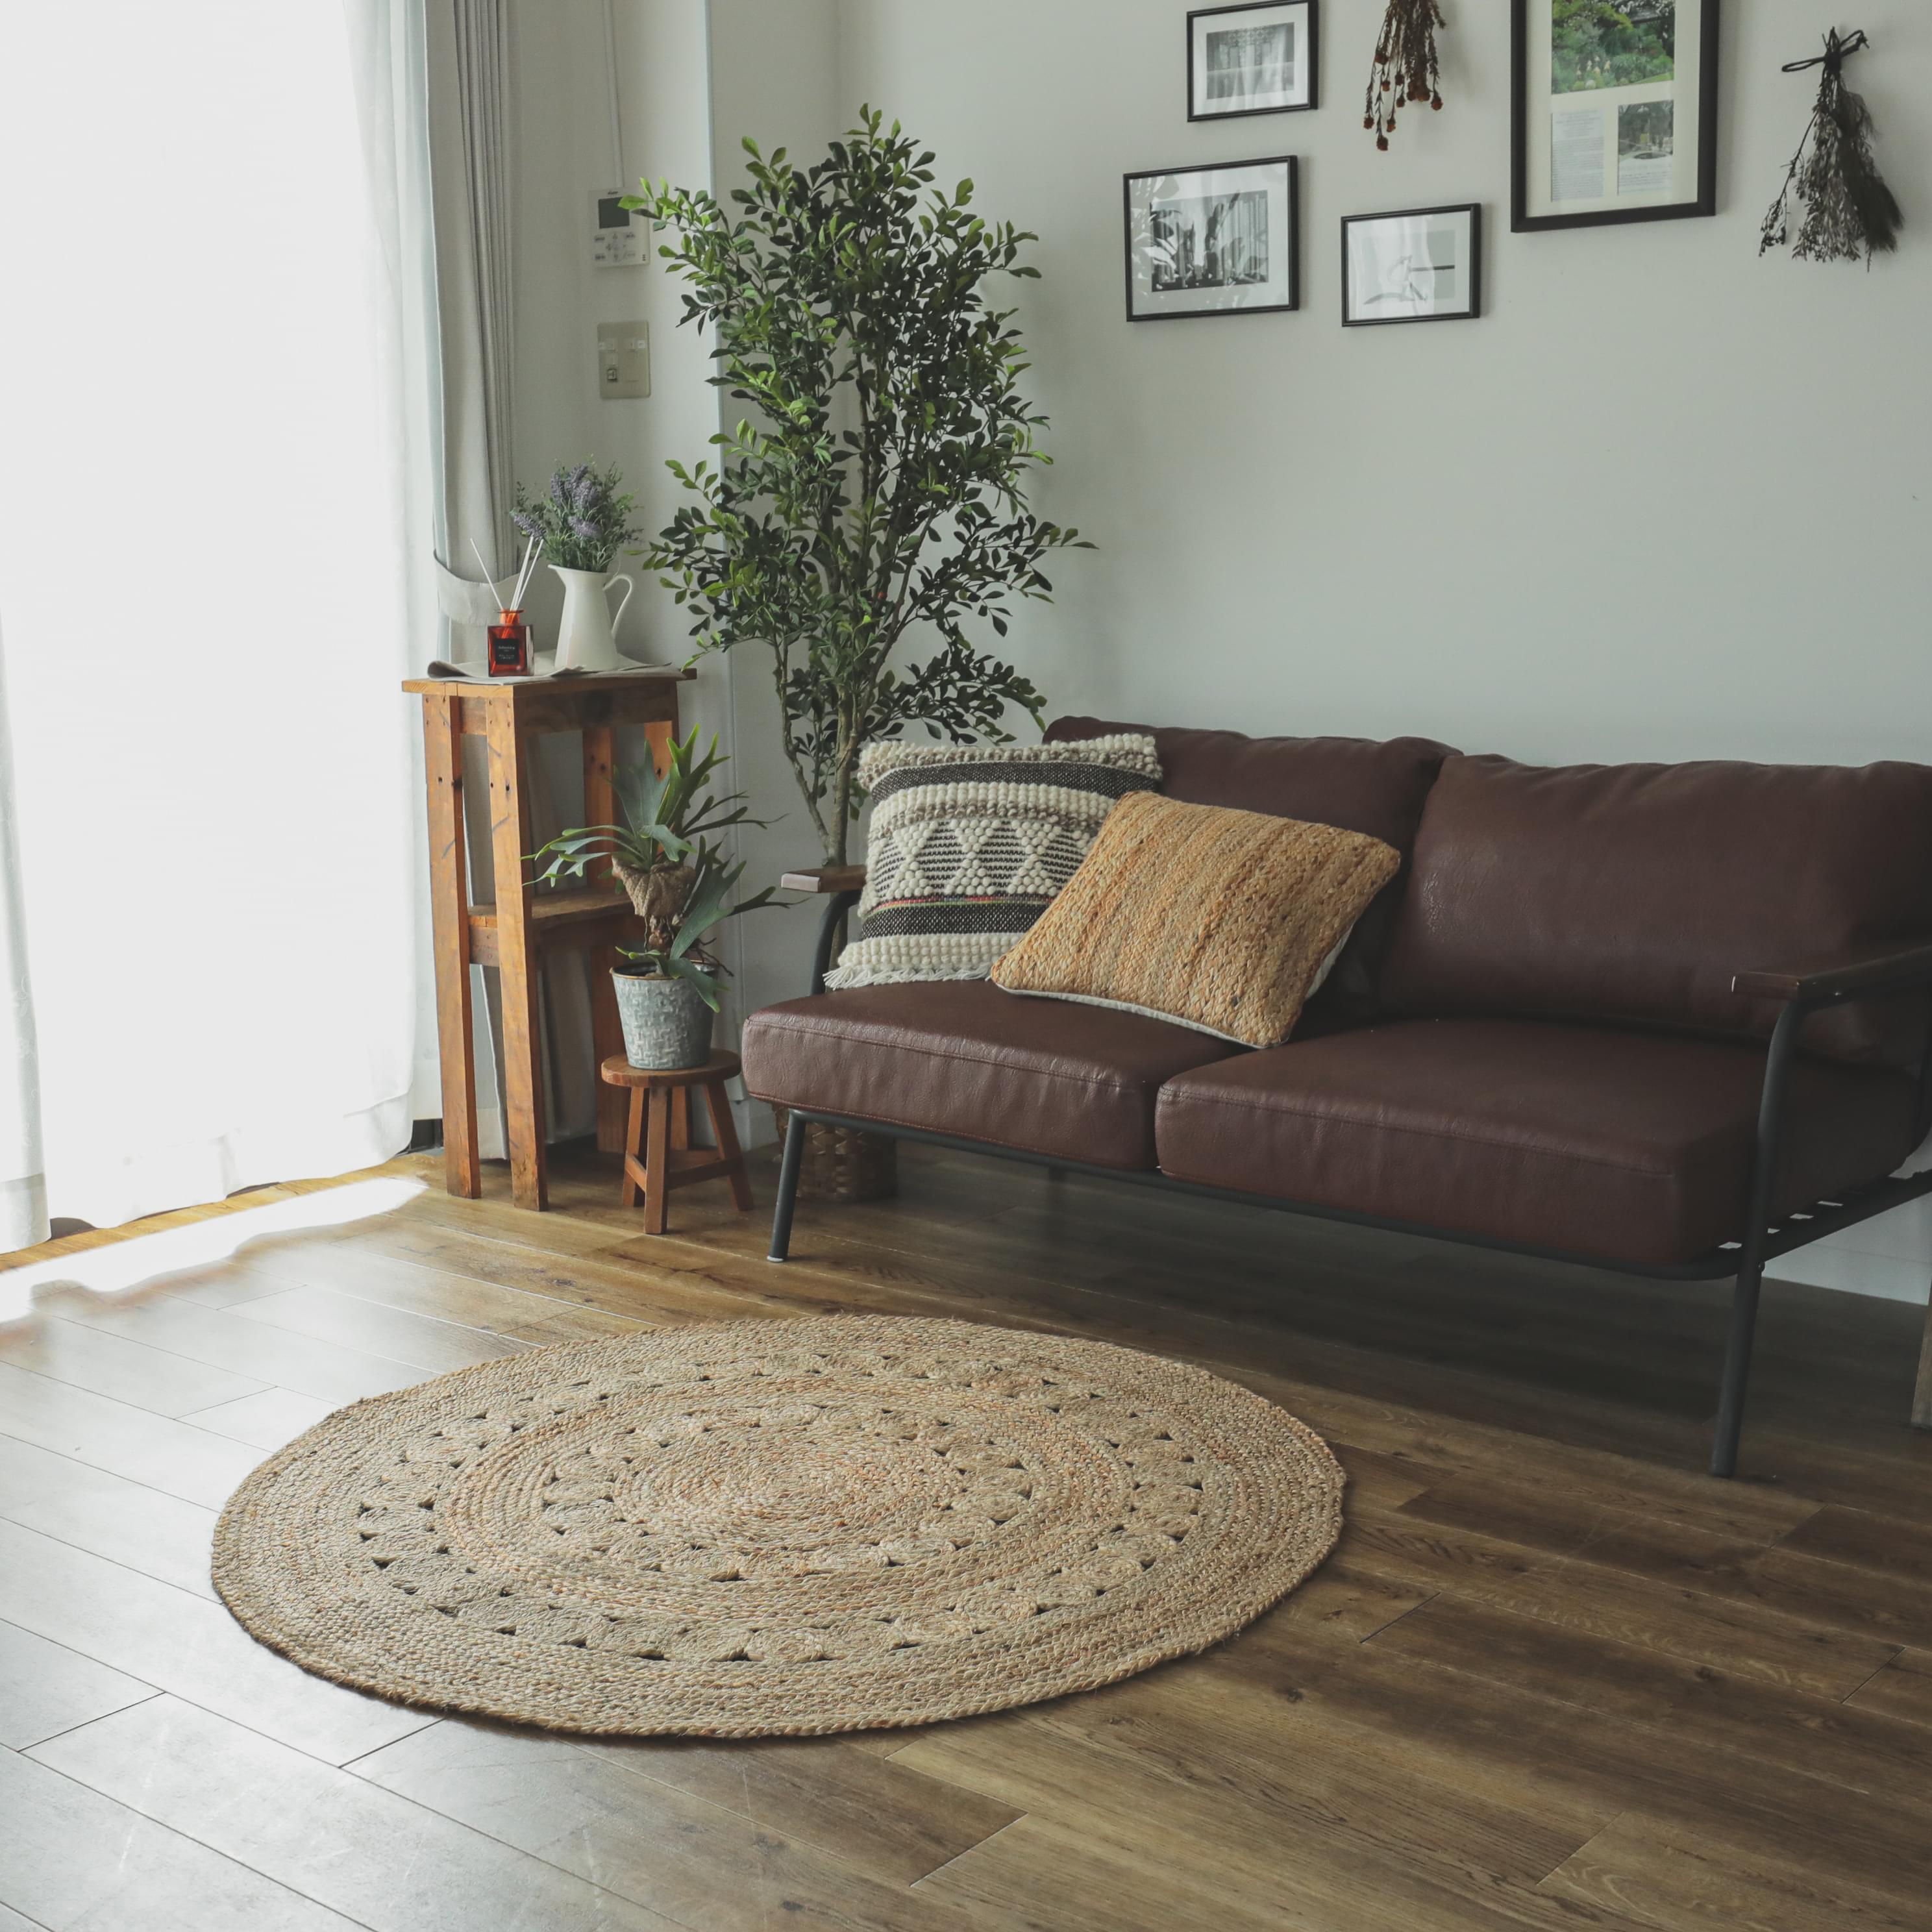 円形はお部屋を柔らかい印象に。寛ぎのパーソナルスペースなどに最適。